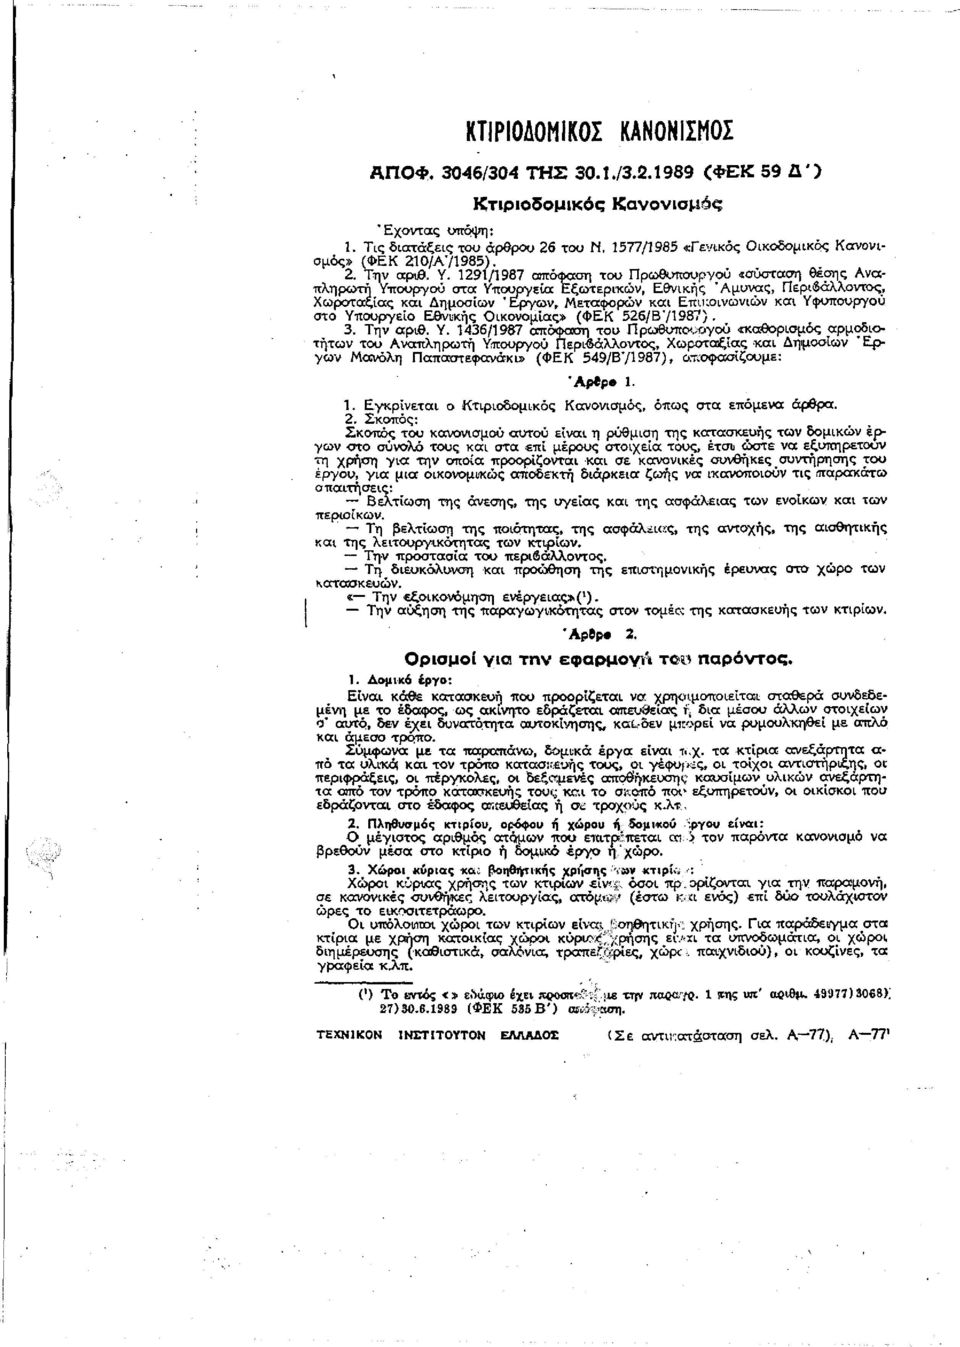 1291/1987 απόφαση του Πρωθυπουργού «σύσταση θέσης Αναπληρωτή Υπουργού στα Υπουργεία Εξωτερικών, Εθνικής Άμυνας, Περιβάλλοντος, Χωροταξίας και Δημοσίων "Εργων, Μεταφορών και Επικοινωνιών και